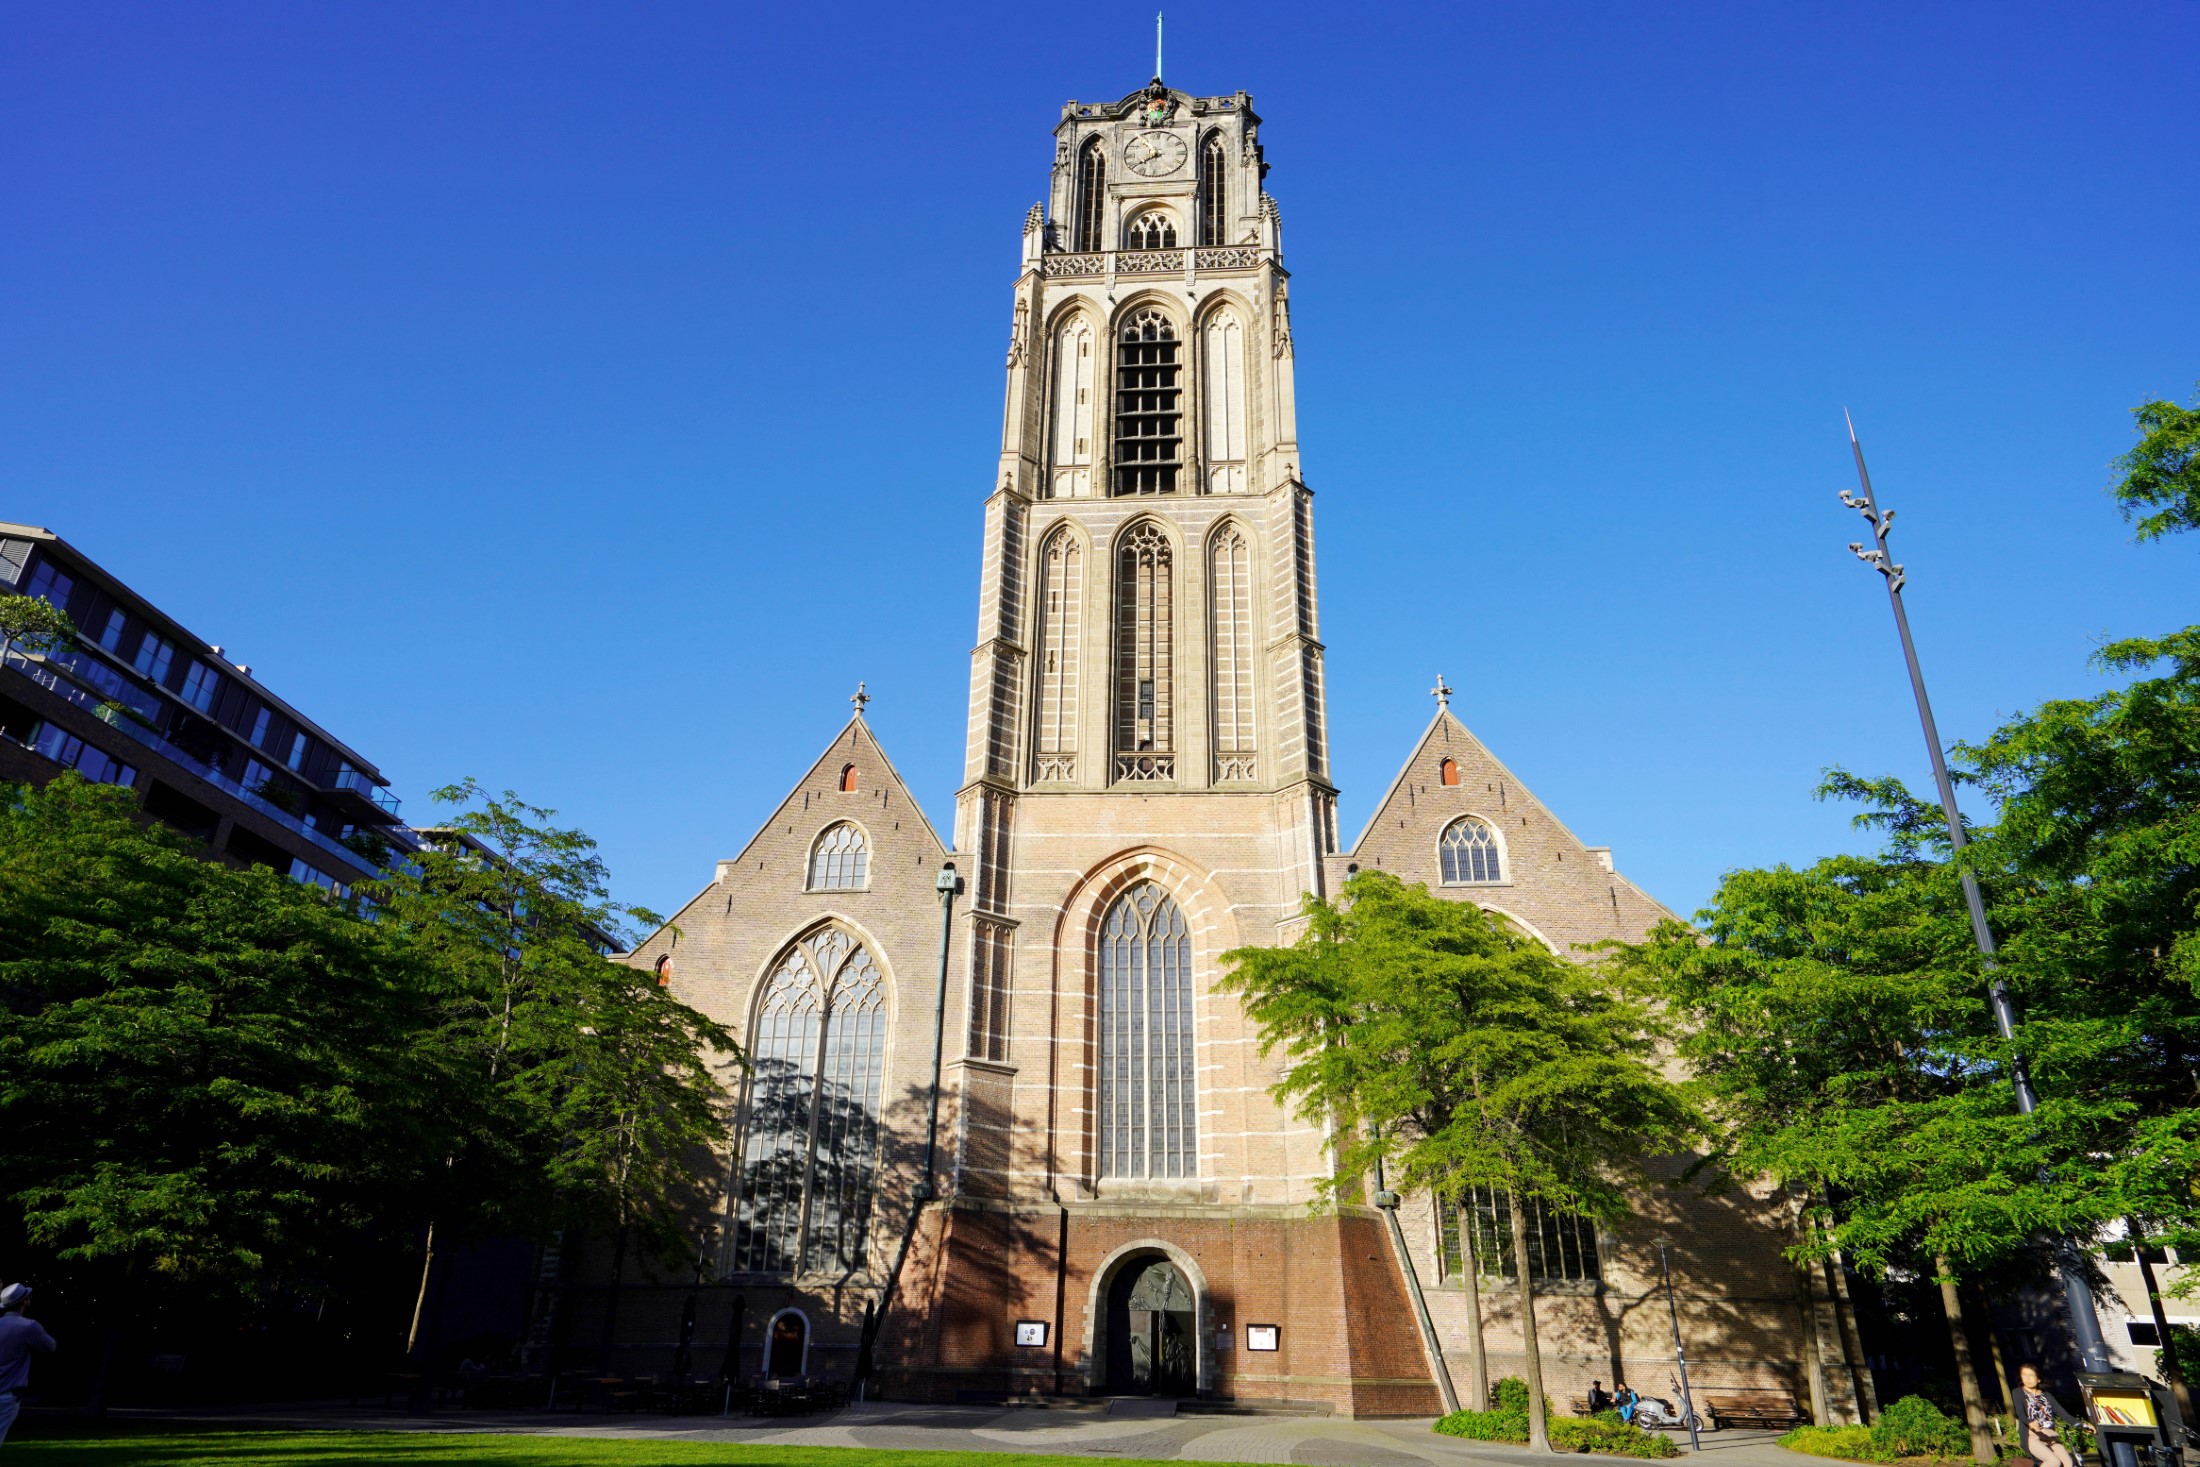 Kościół św. Wawrzyńca jest kościołem protestanckim w Rotterdamie